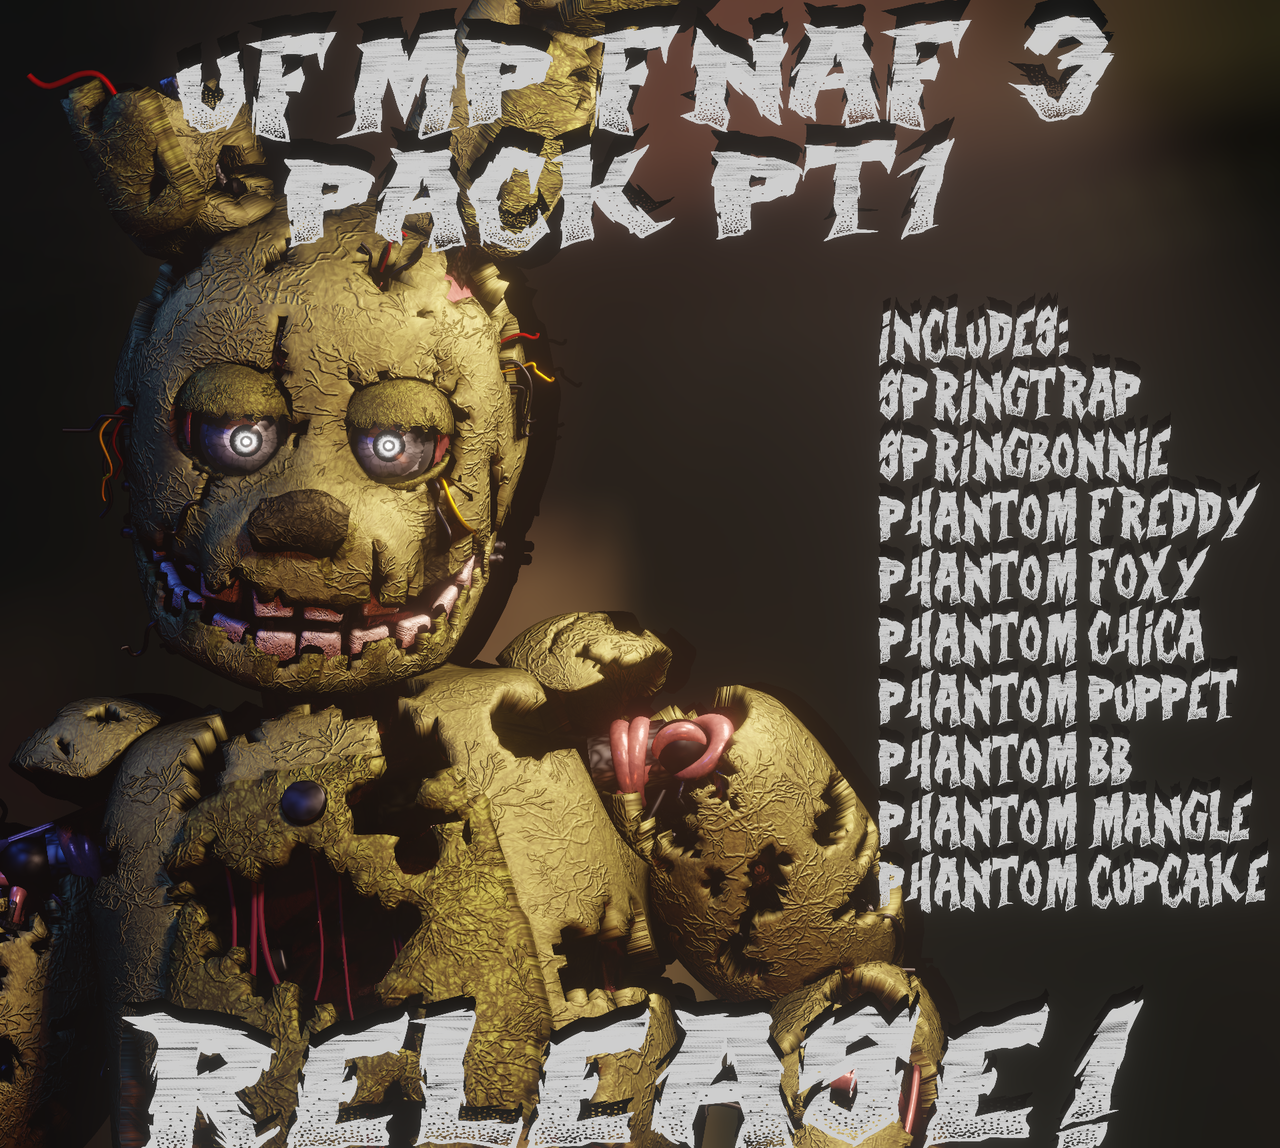 UFMP FNaF 1 Pack UPDATE 2 Release by UFMPDA on DeviantArt